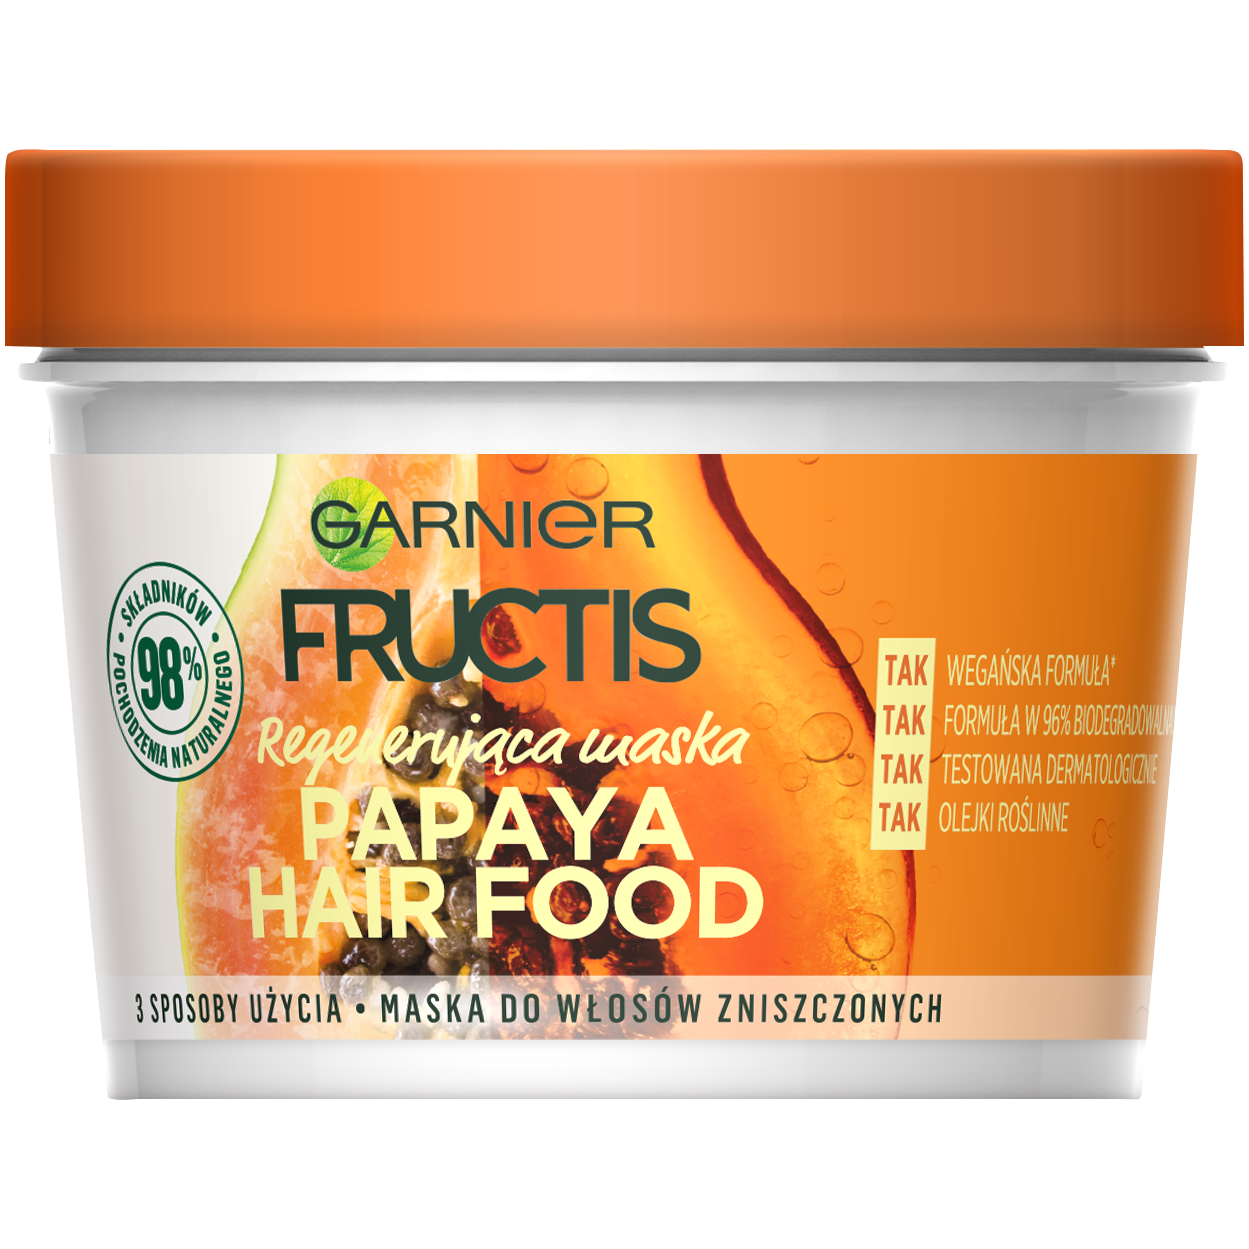 Garnier Fructis Papaja Hair Food maska do włosów zniszczonych, 390 ml | hebe .pl